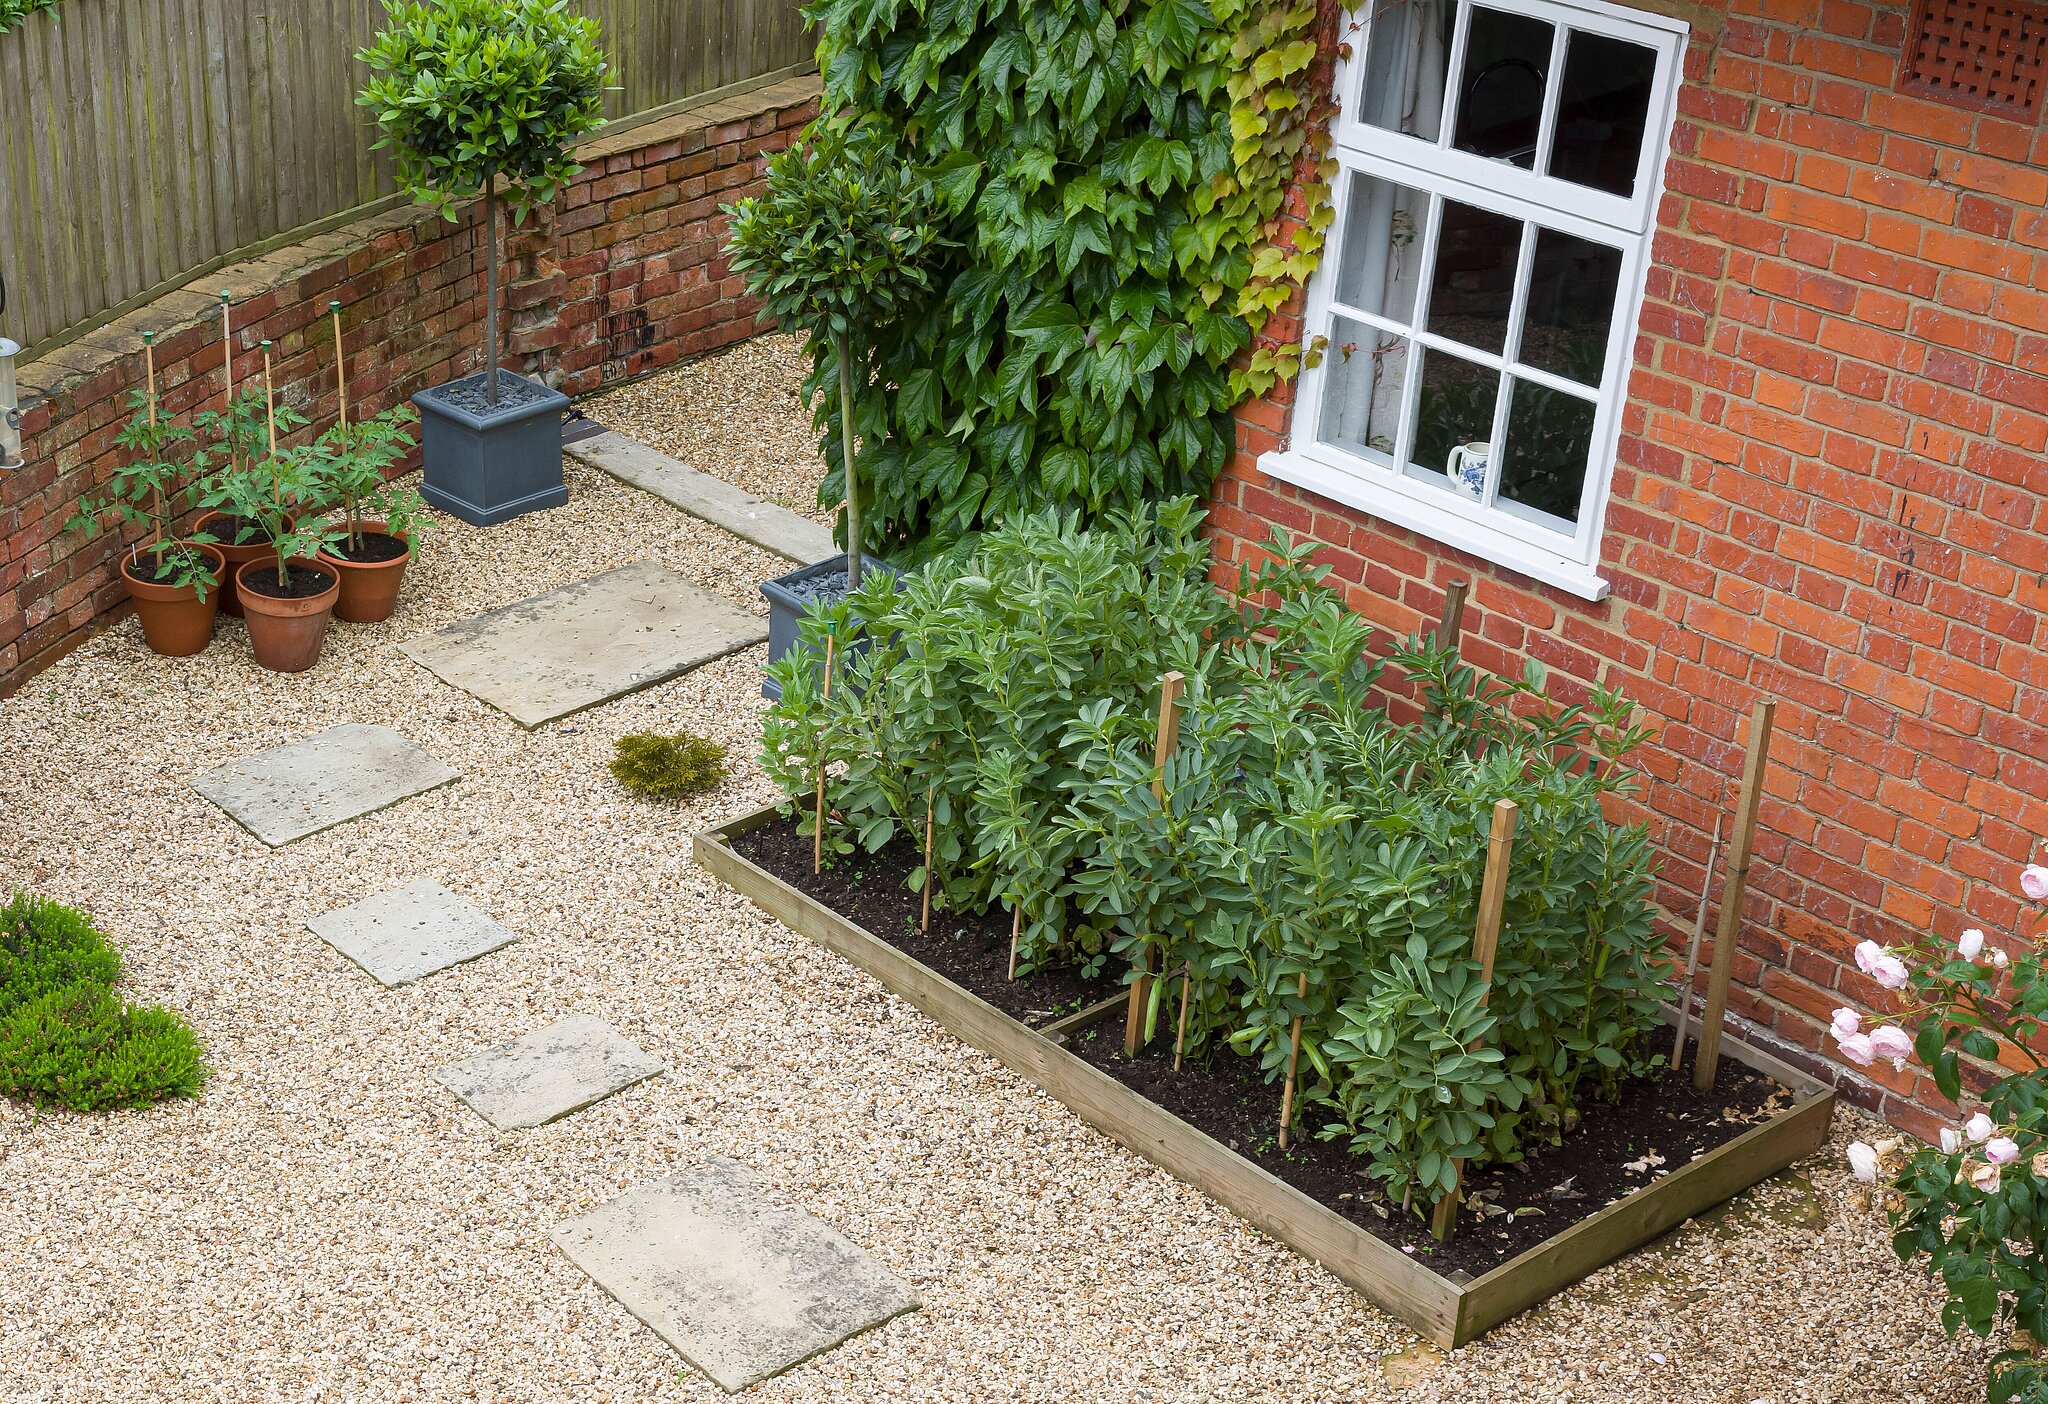 Innenhof zeigt verschiedene Gartenbaustoffe wie Schotter, Kies, Platten und Hochbeeten